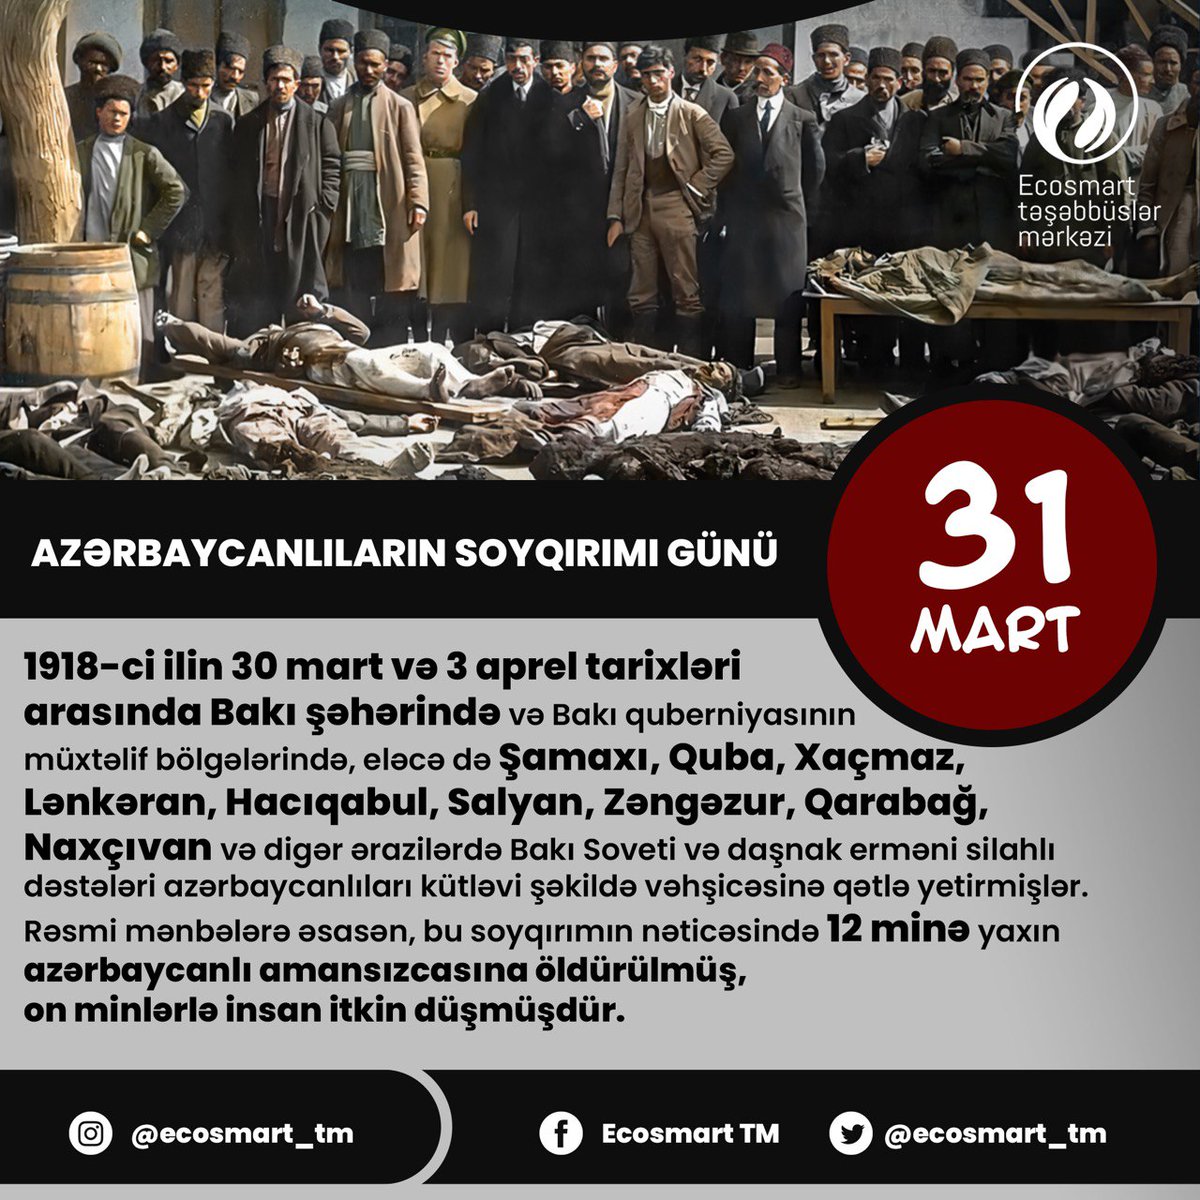 31 Mart Azərbaycanlıların Soyqırımı Günüdür. #EcoSmart #gələcəküçün #forthefuture #31mart #soyqırımıgünü #genoside #soyqırımı